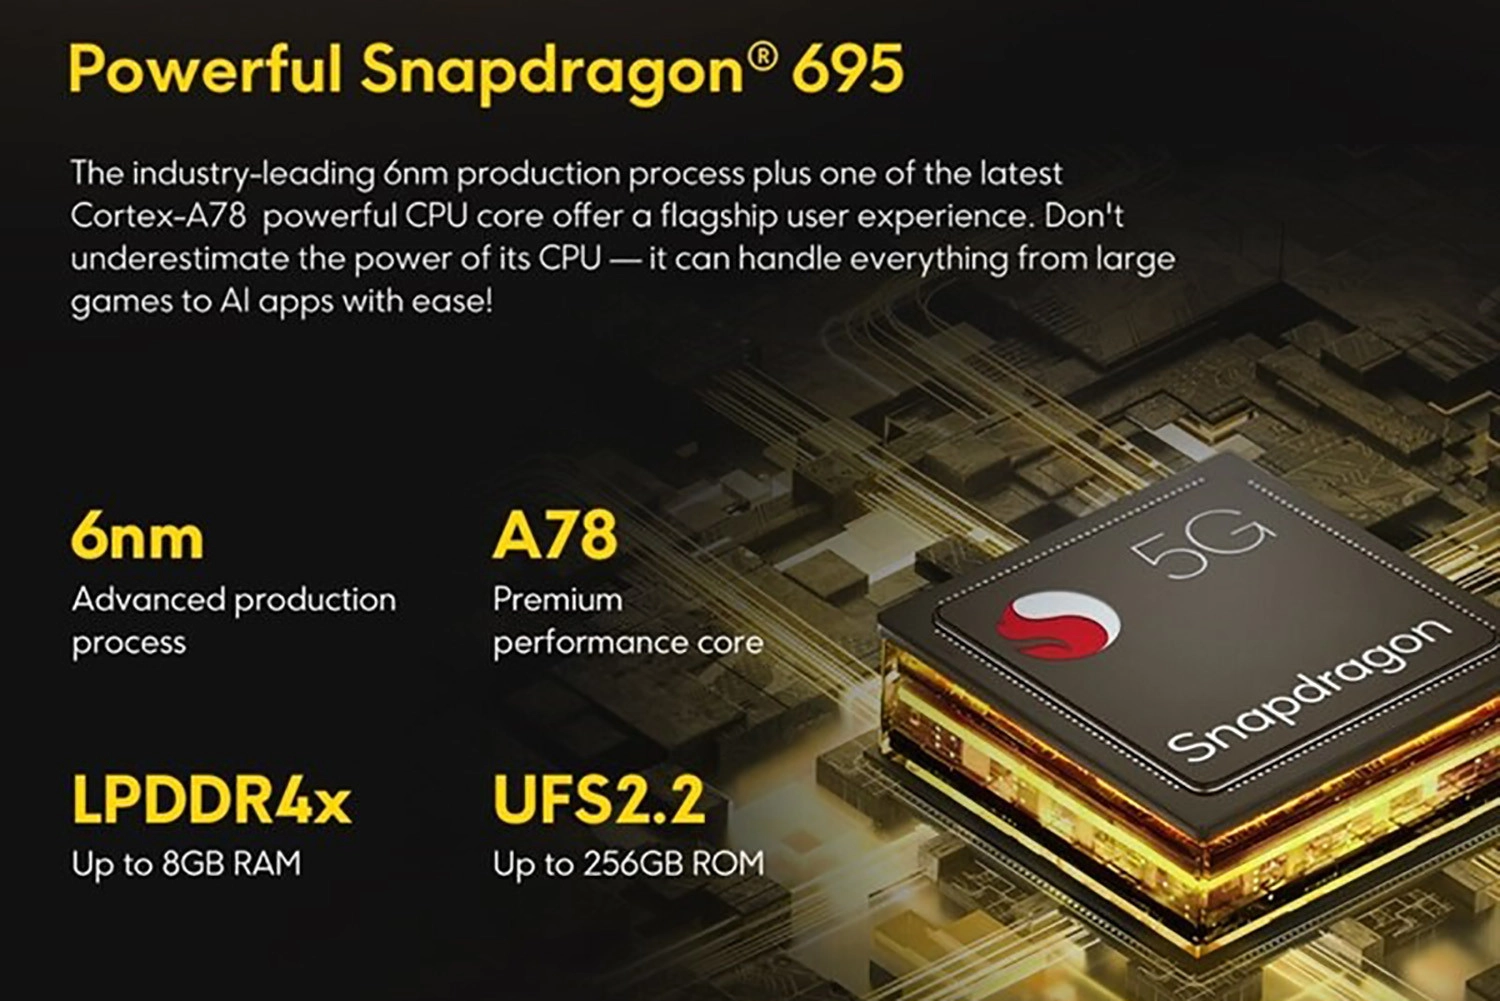 Bố cục CPU 2+6 được sử dụng trên Snapdragon 695